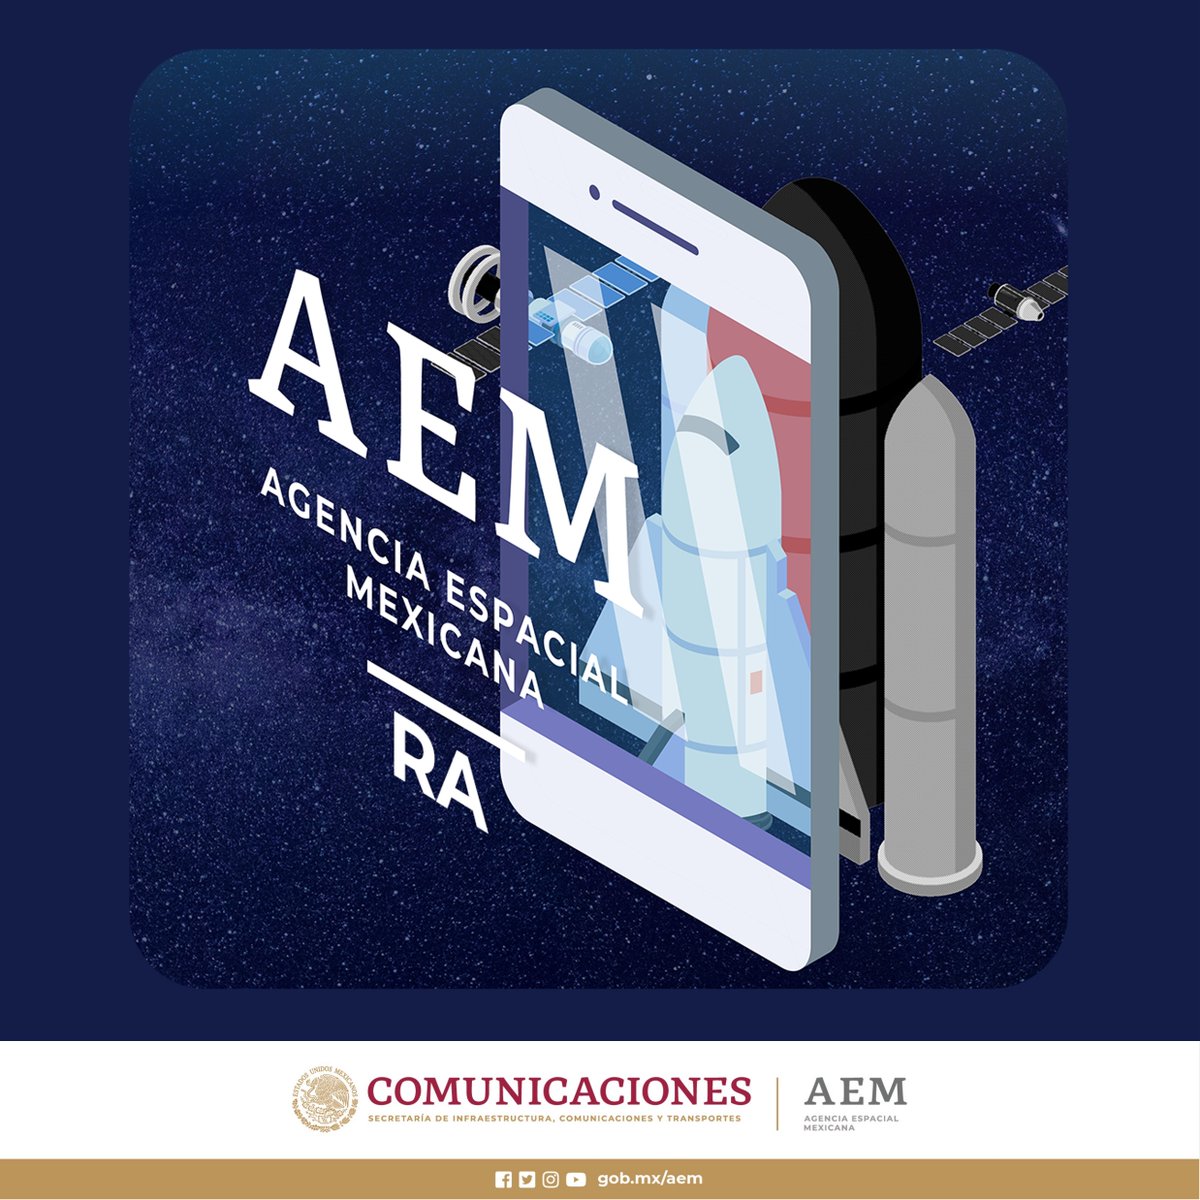 ¿Ya conoces nuestra APP educativa 'AR Espacio Aumentado AEM'? ¡Bájala en tu celular y comienza esta experiencia de realidad aumentada con nuestro contenido! 👉 aem.gob.mx/Espacio_RX